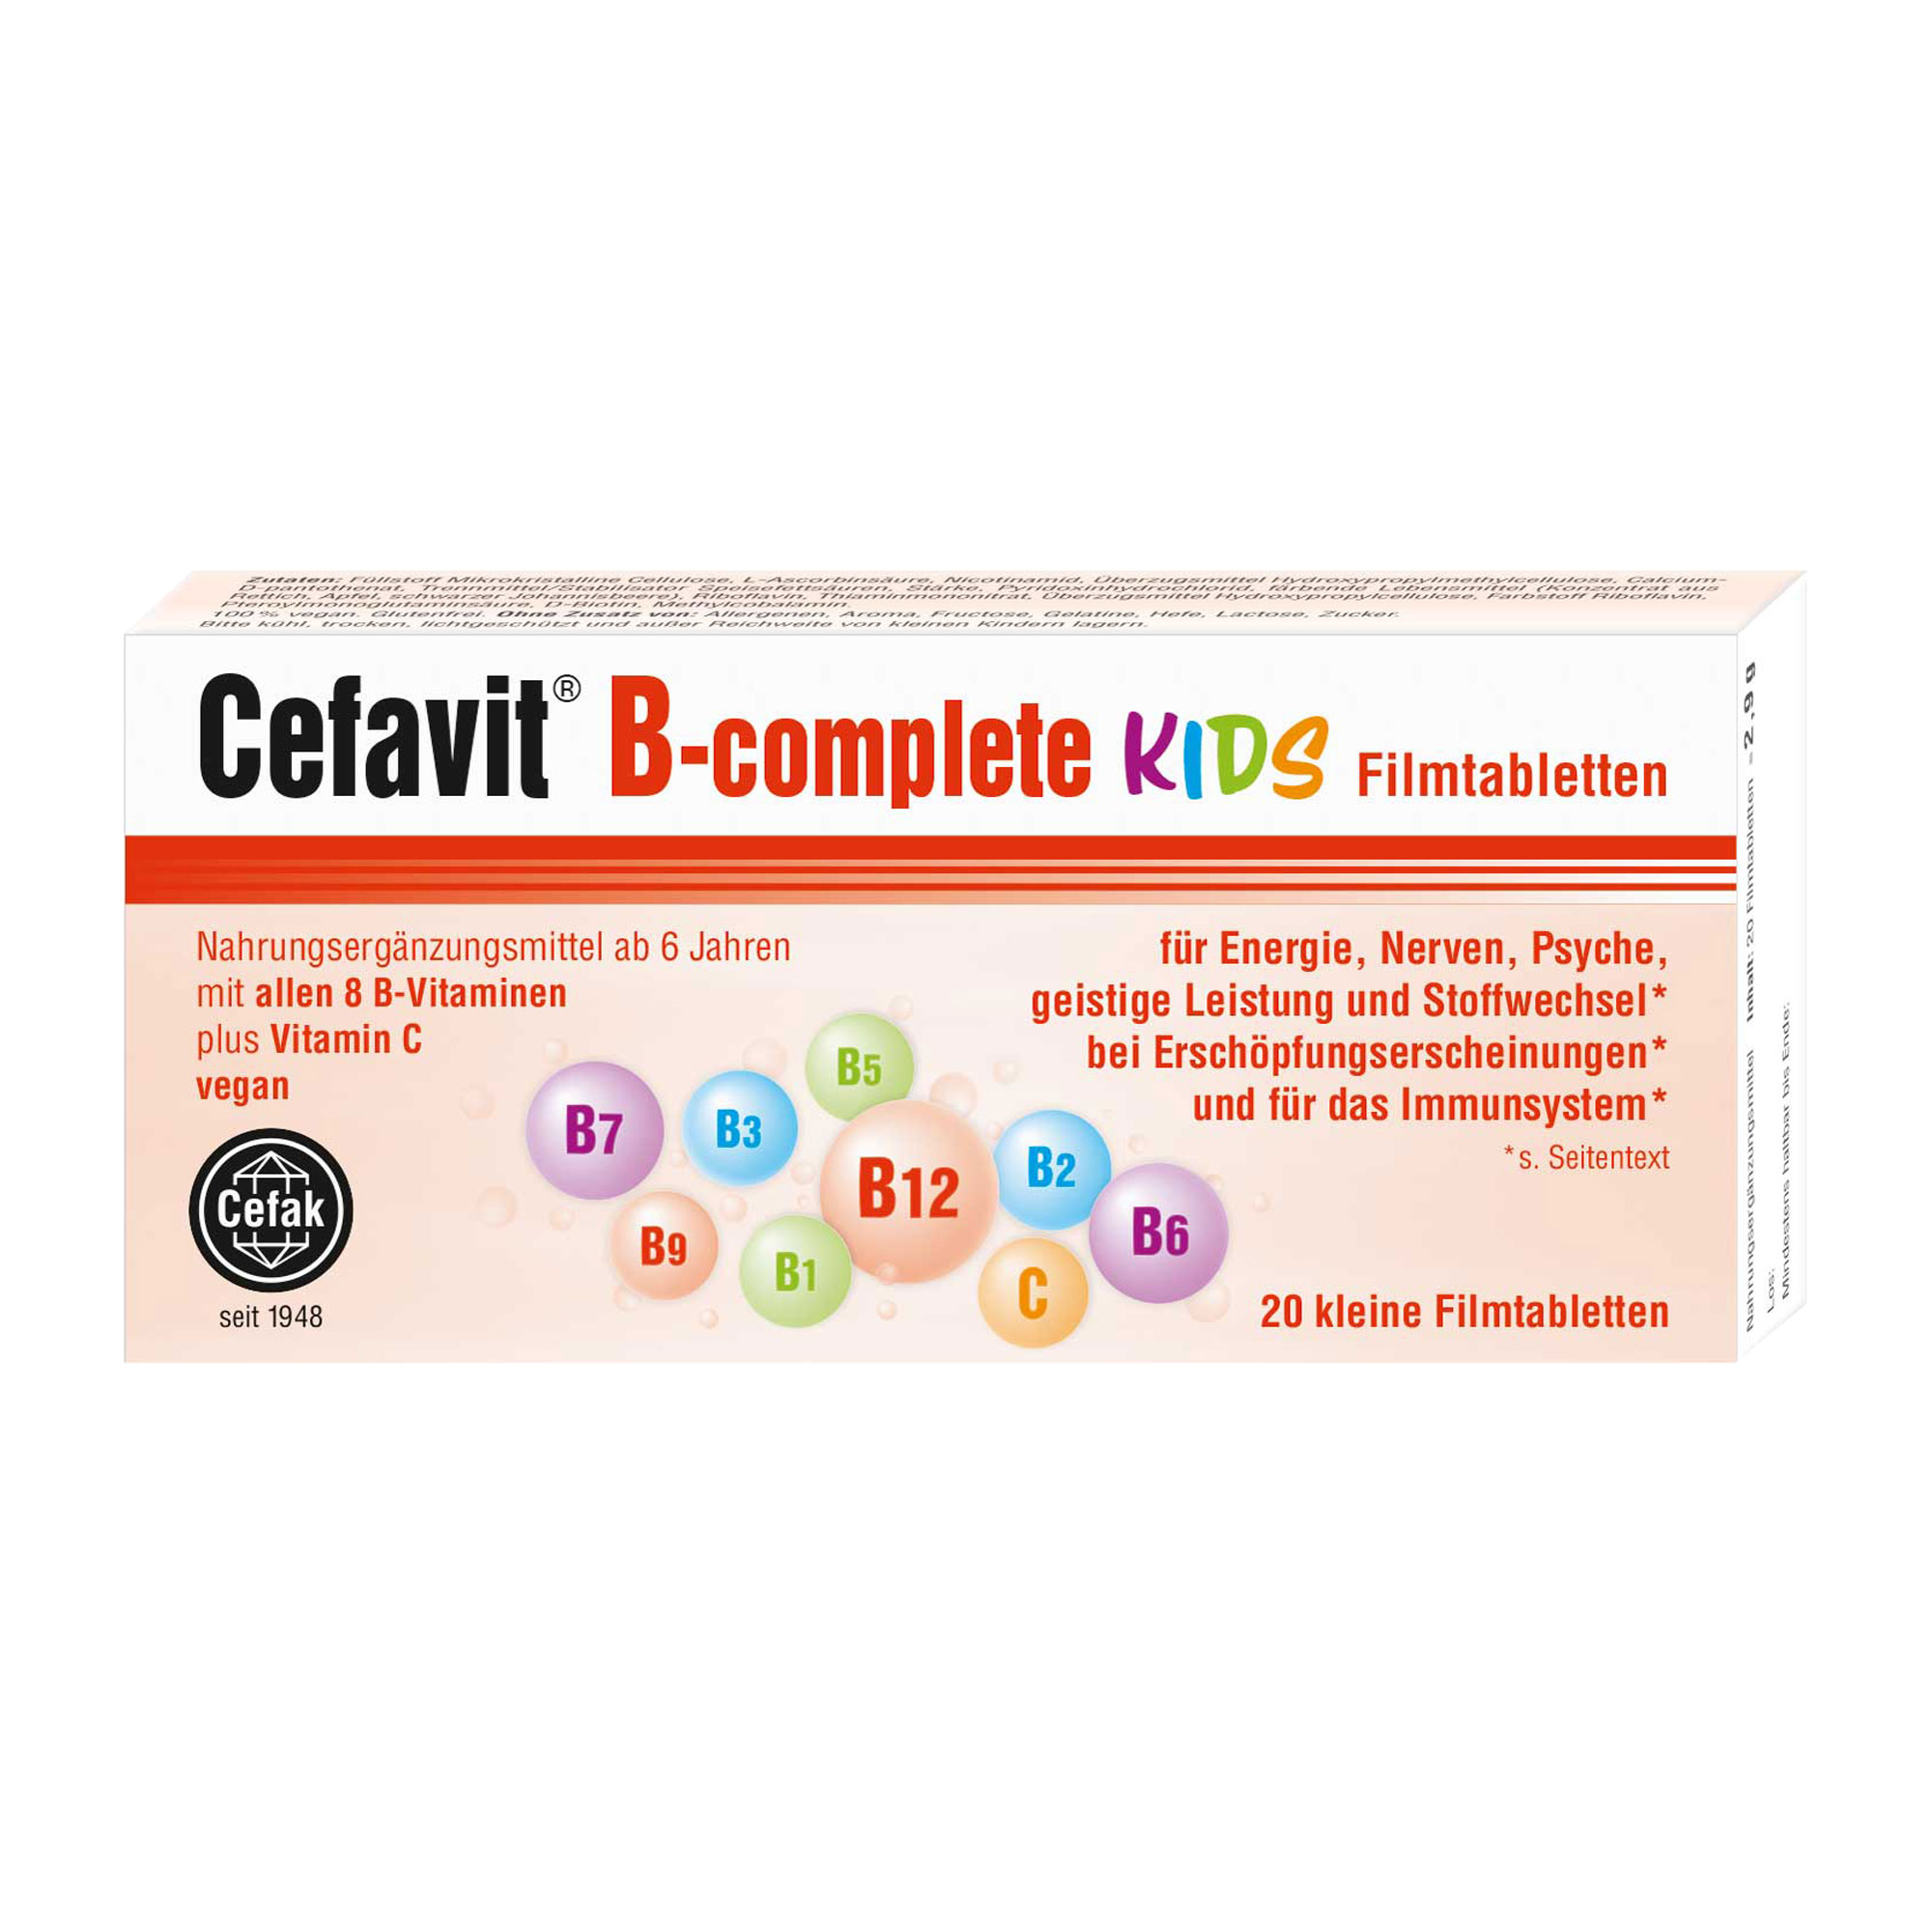 Nahrungsergänzungsmittel mit allen 8 B-Vitaminen plus Vitamin C. Für Kinder ab 6 Jahren geeignet.